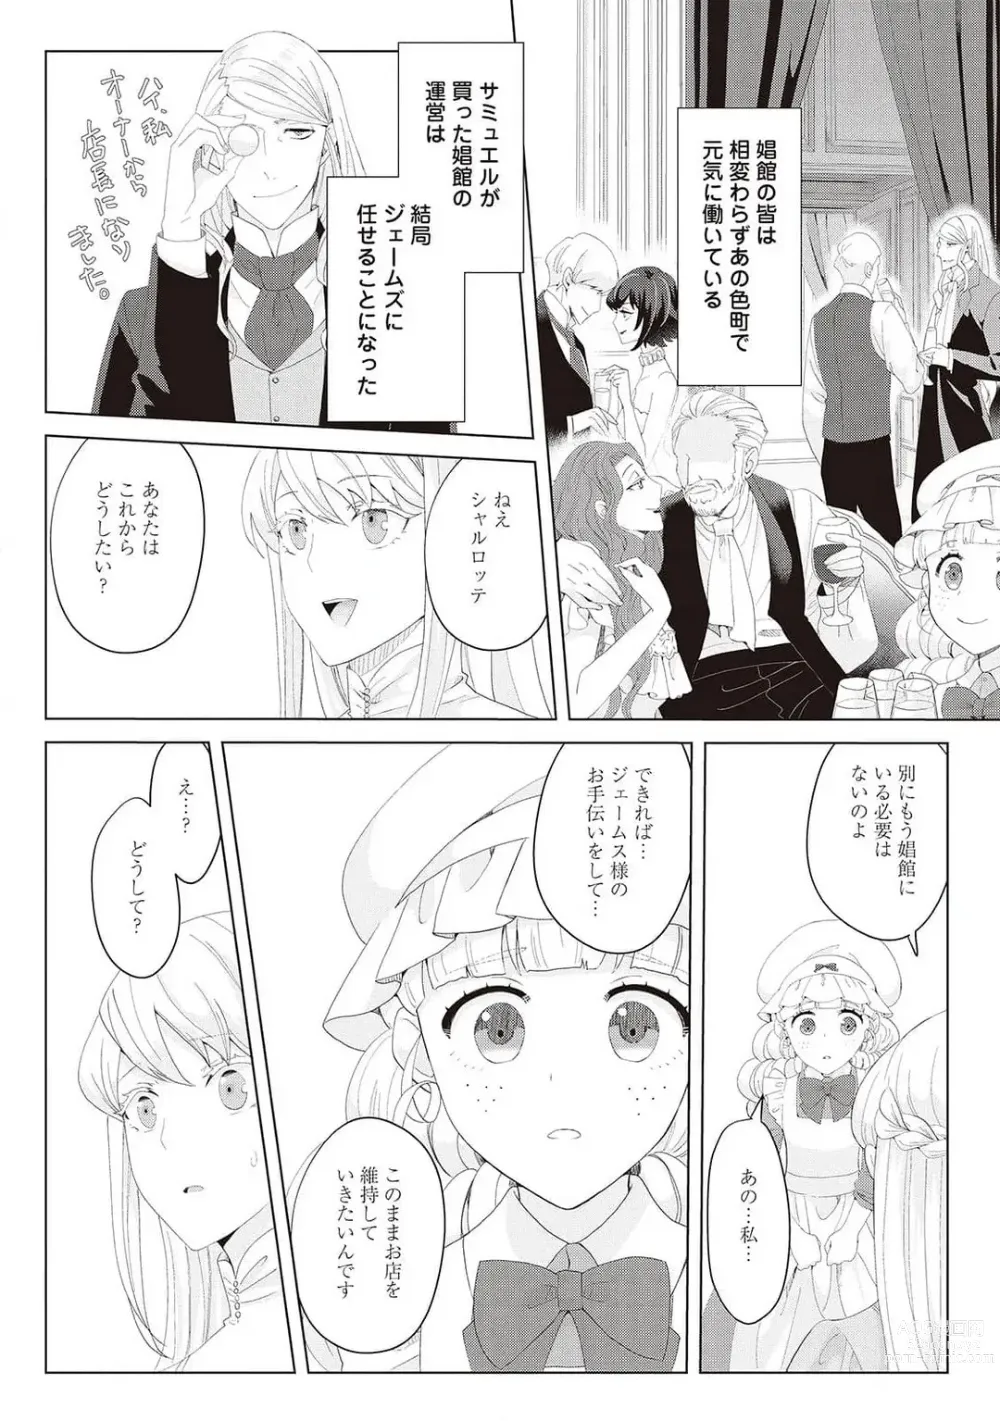 Page 421 of manga 悪役令嬢に転生したけど、破局したはずのカタブツ王太子に溺愛されてます！？ 1-18